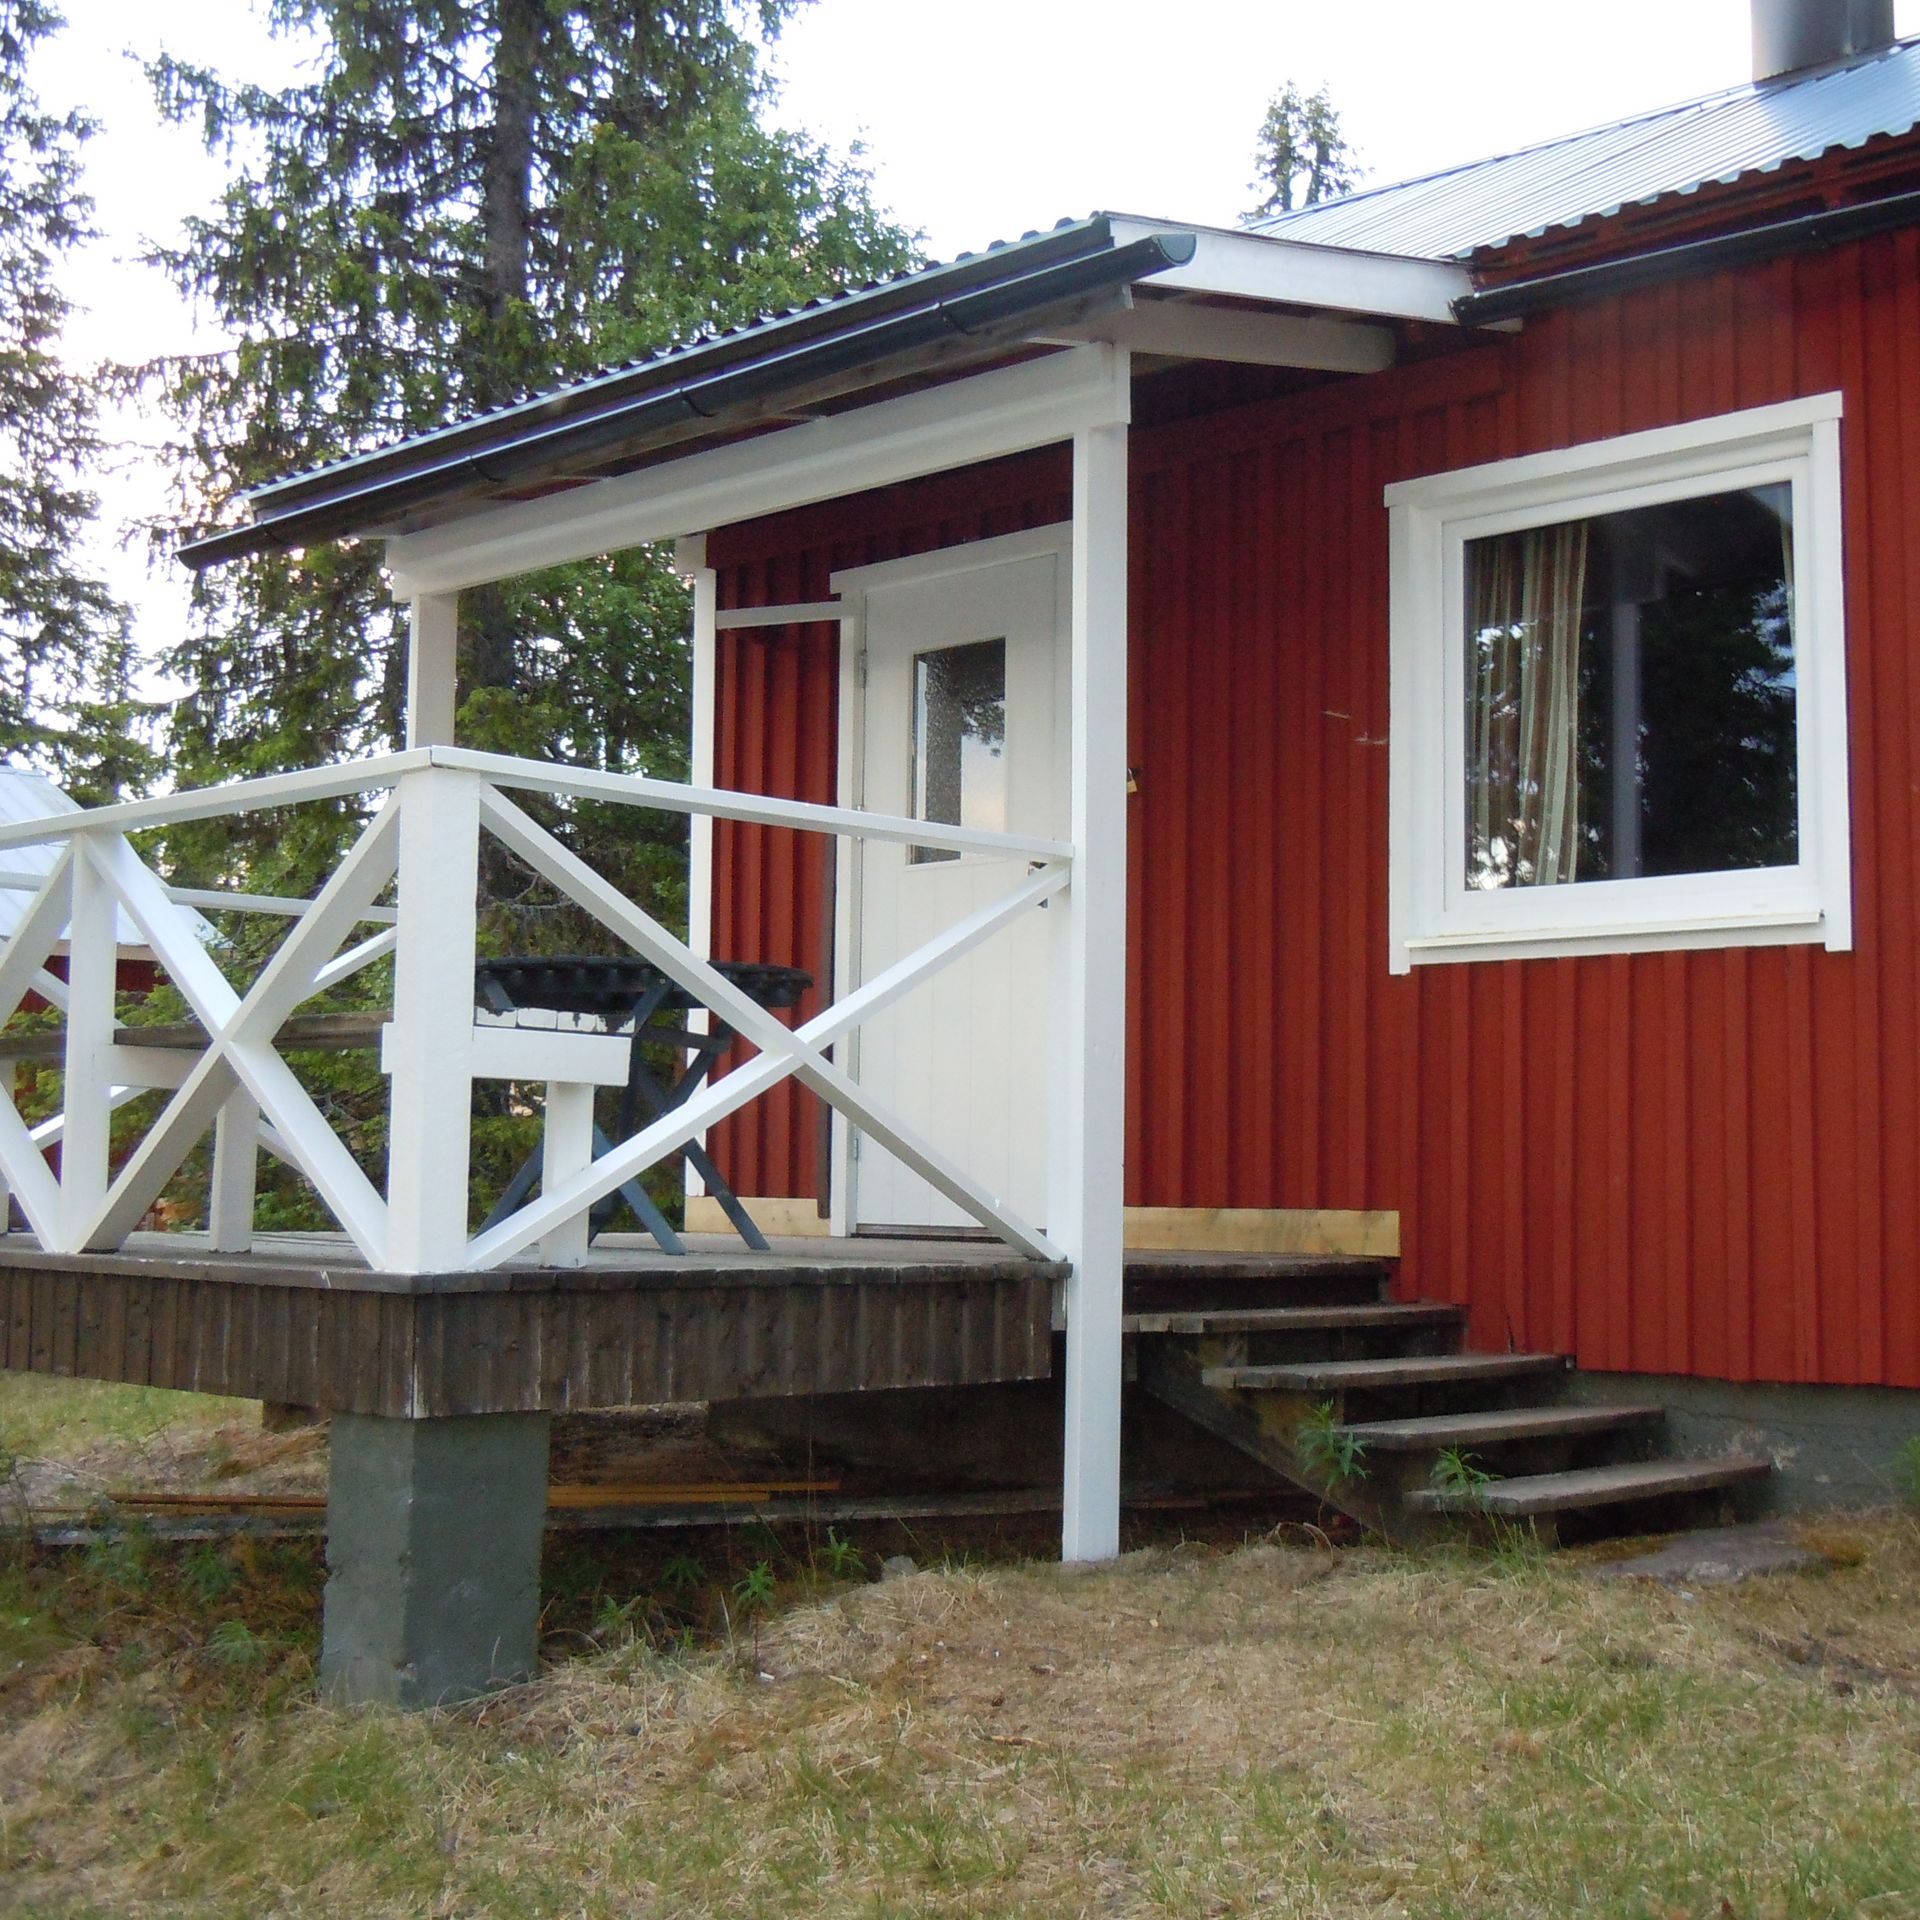 Ferienhaus in Schwedisch-Lappland